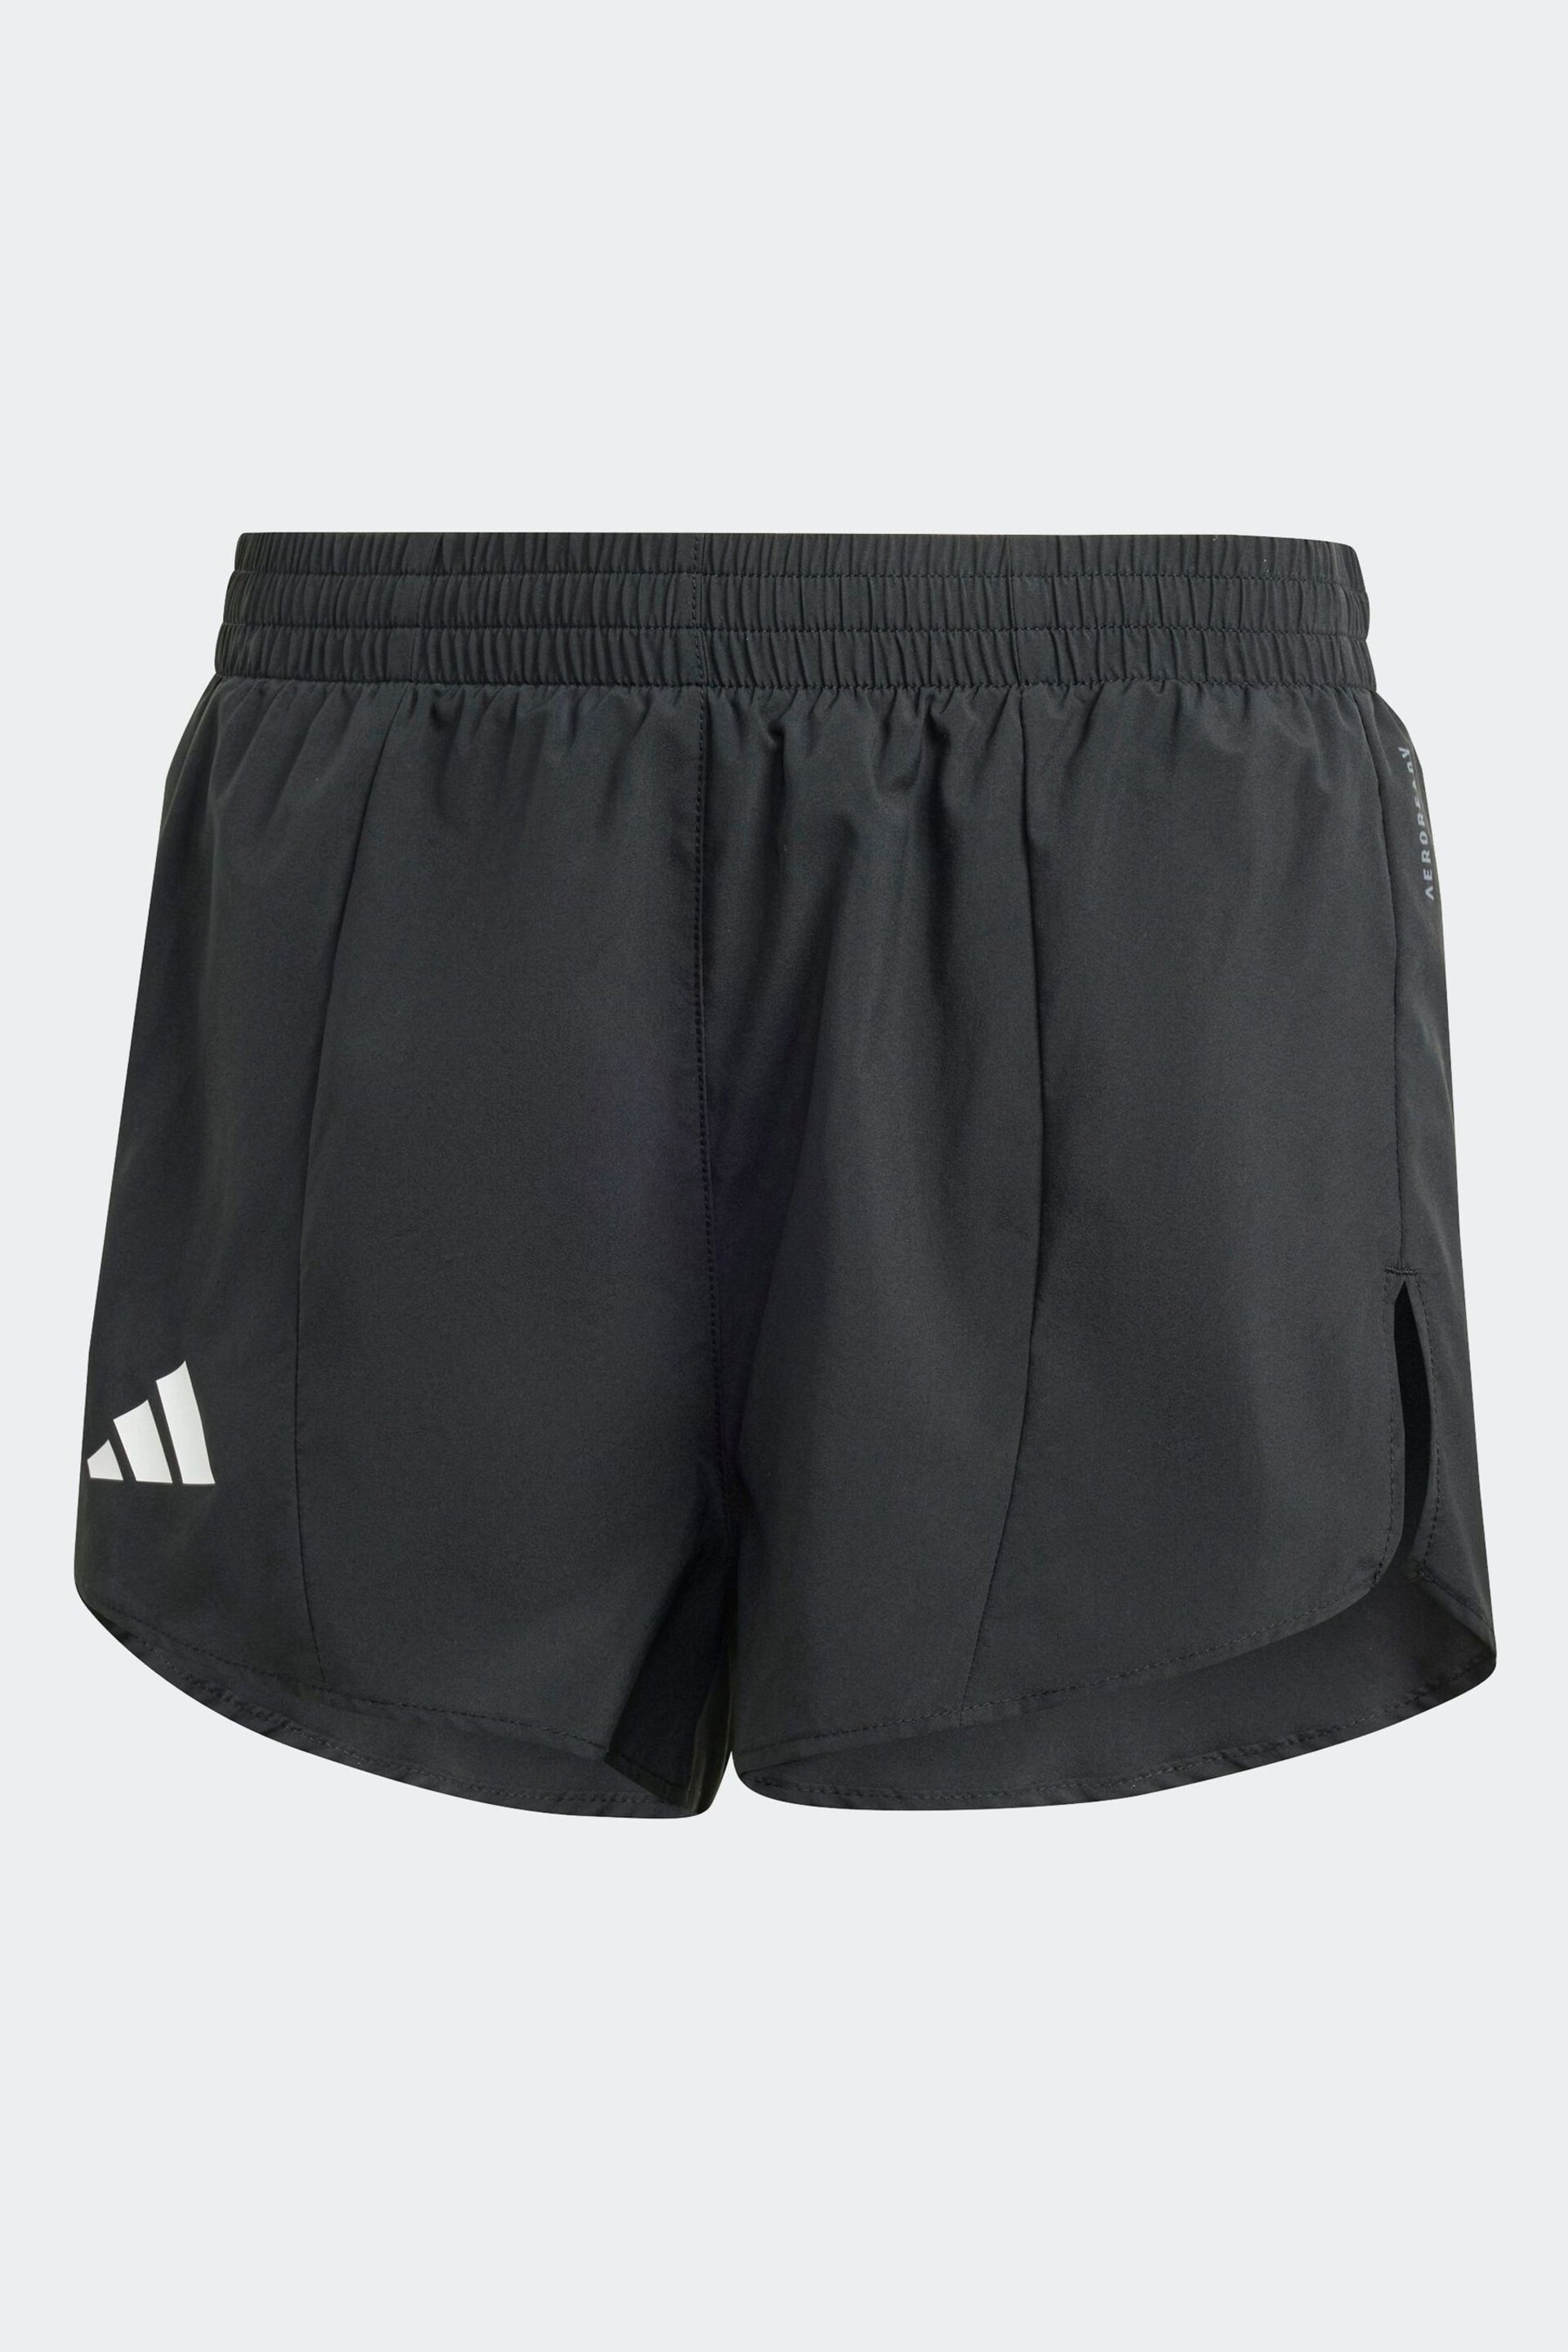 adidas Black Shorts - Image 3 of 3